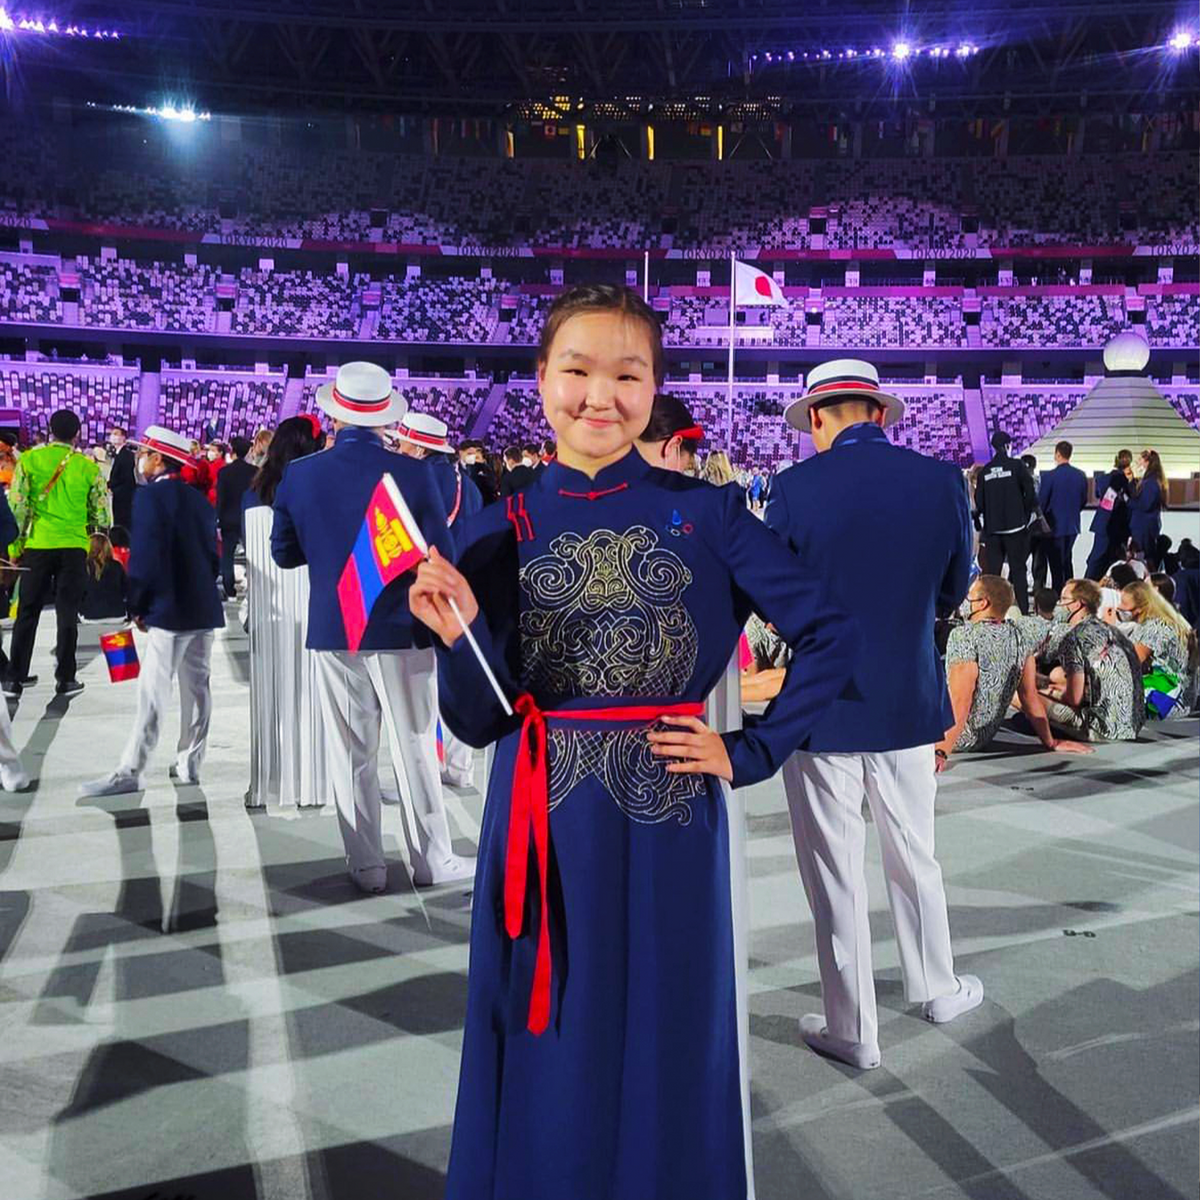 "Токио-2020" зуны олимпын наадамд Монгол улсаа төлөөлж 64-т шалгарсан минь миний хувьд хамгийн том амжилт. Цаашдаа Монгол улсынхаа нэрийг гаргахын төлөө илүү их хичээж, ранкаа дээшлүүлэхийг зорьж байна.